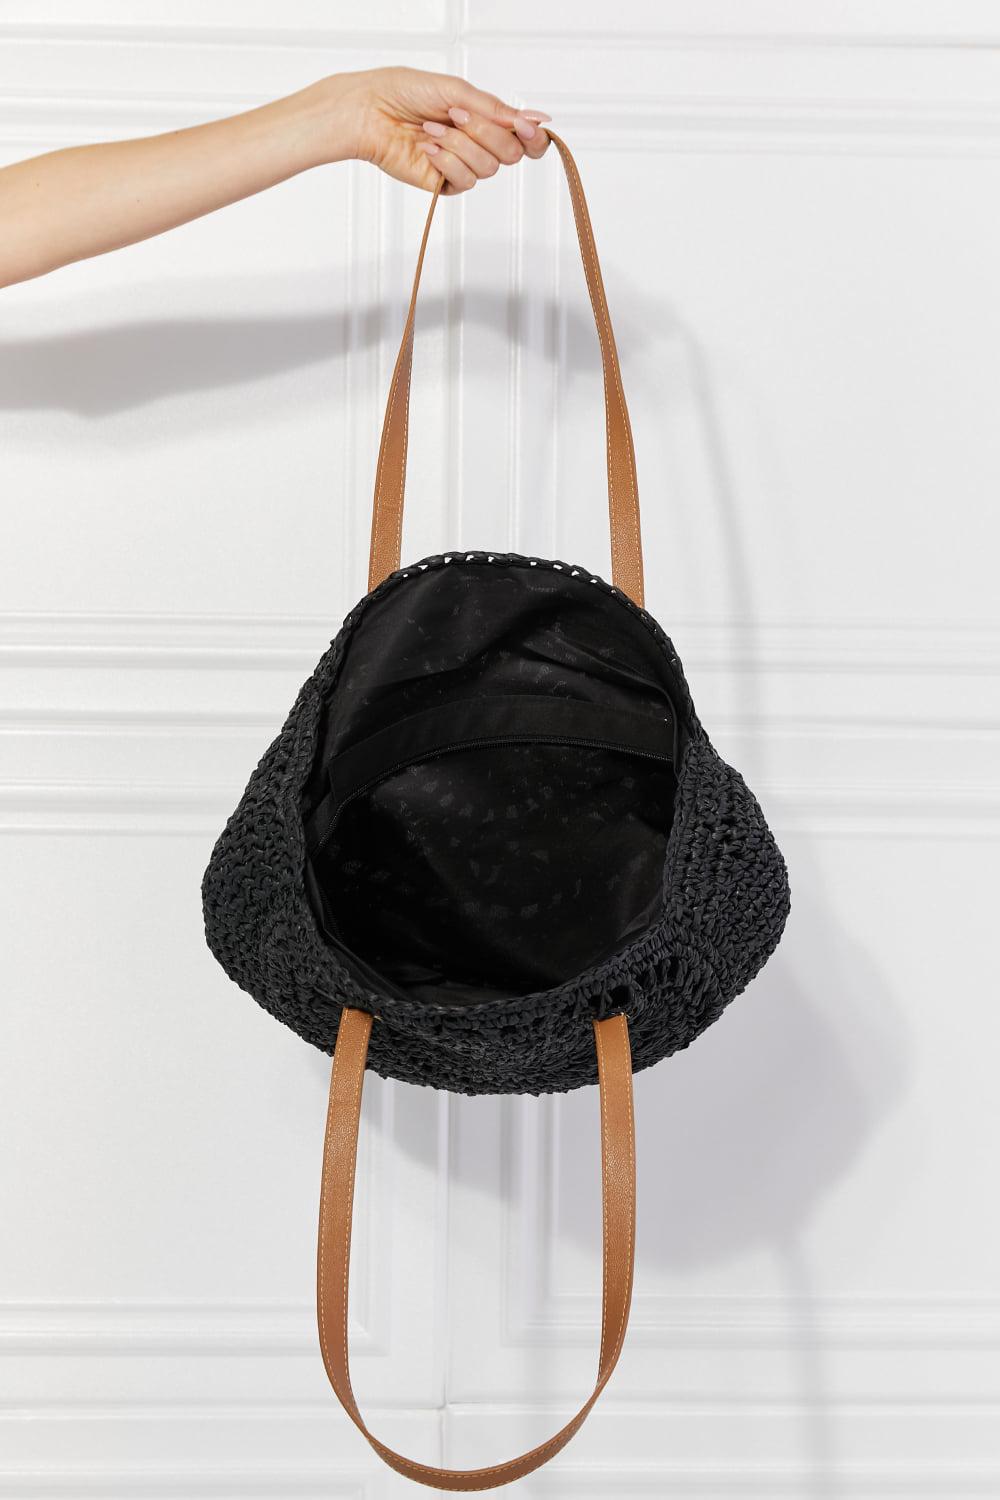 Justin Taylor C'est La Vie Crochet Handbag in Black BLUE ZONE PLANET